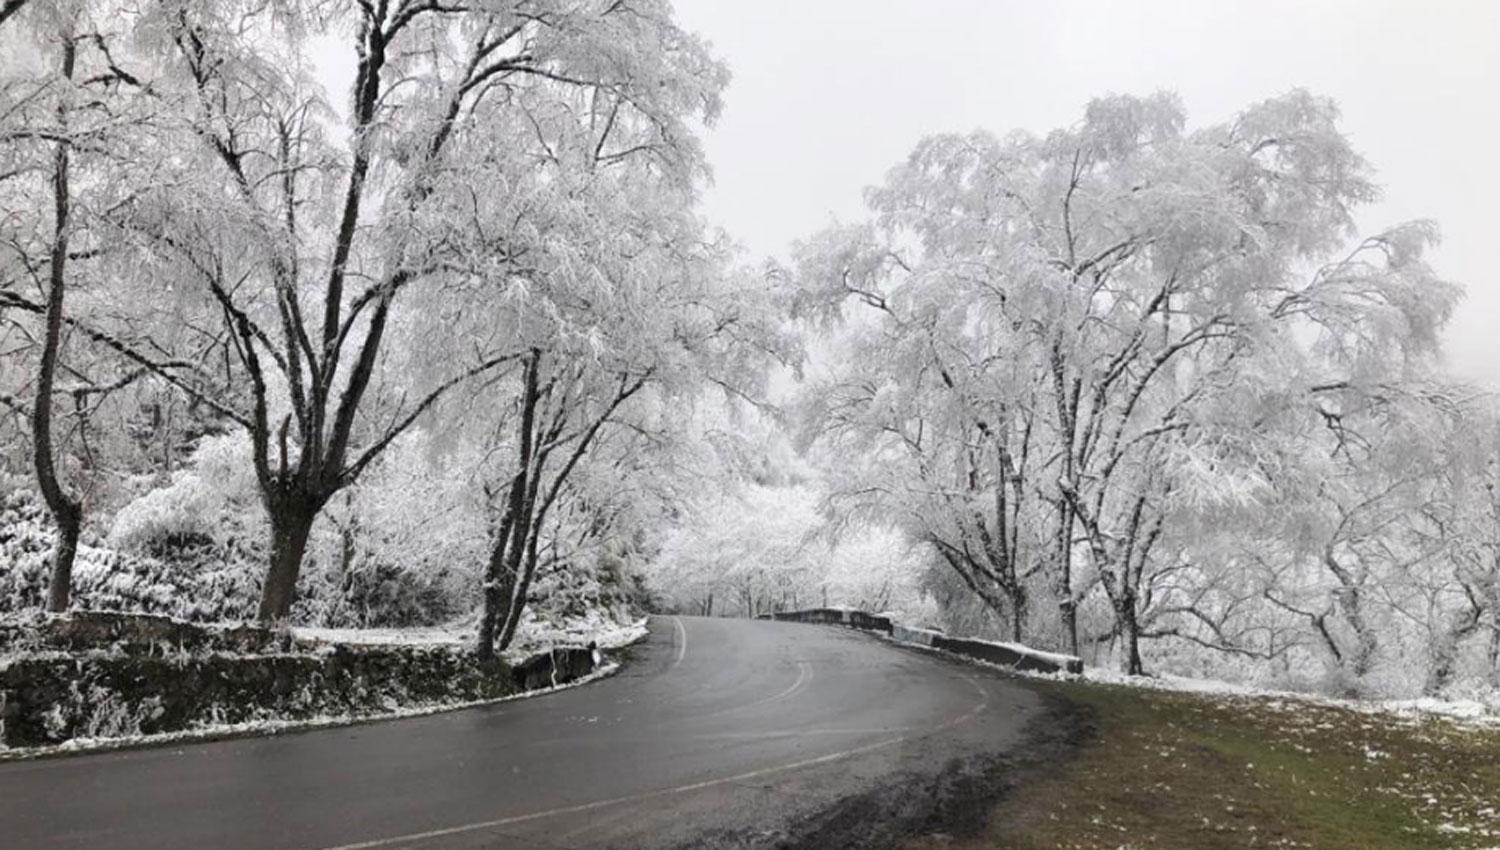 El camino a Tafi del Valle mostró paisajes tapados por la nevada de esta madrugada.